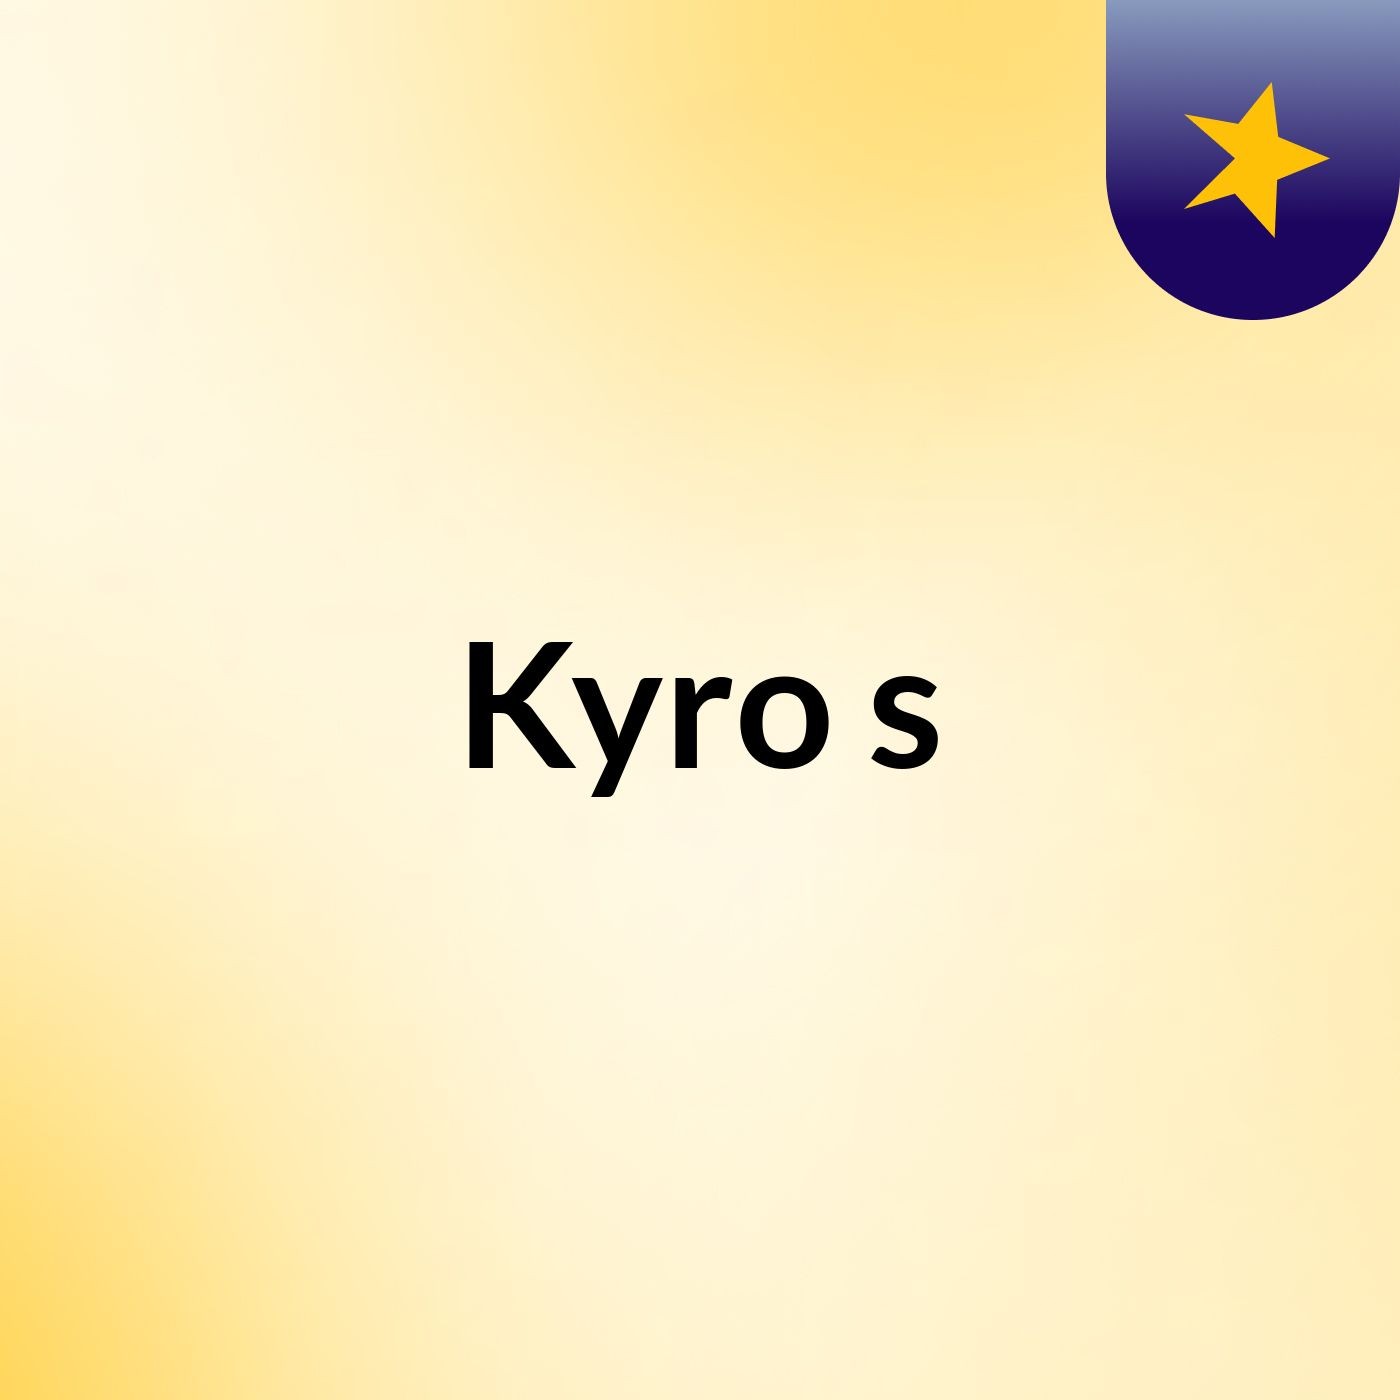 Kyro's